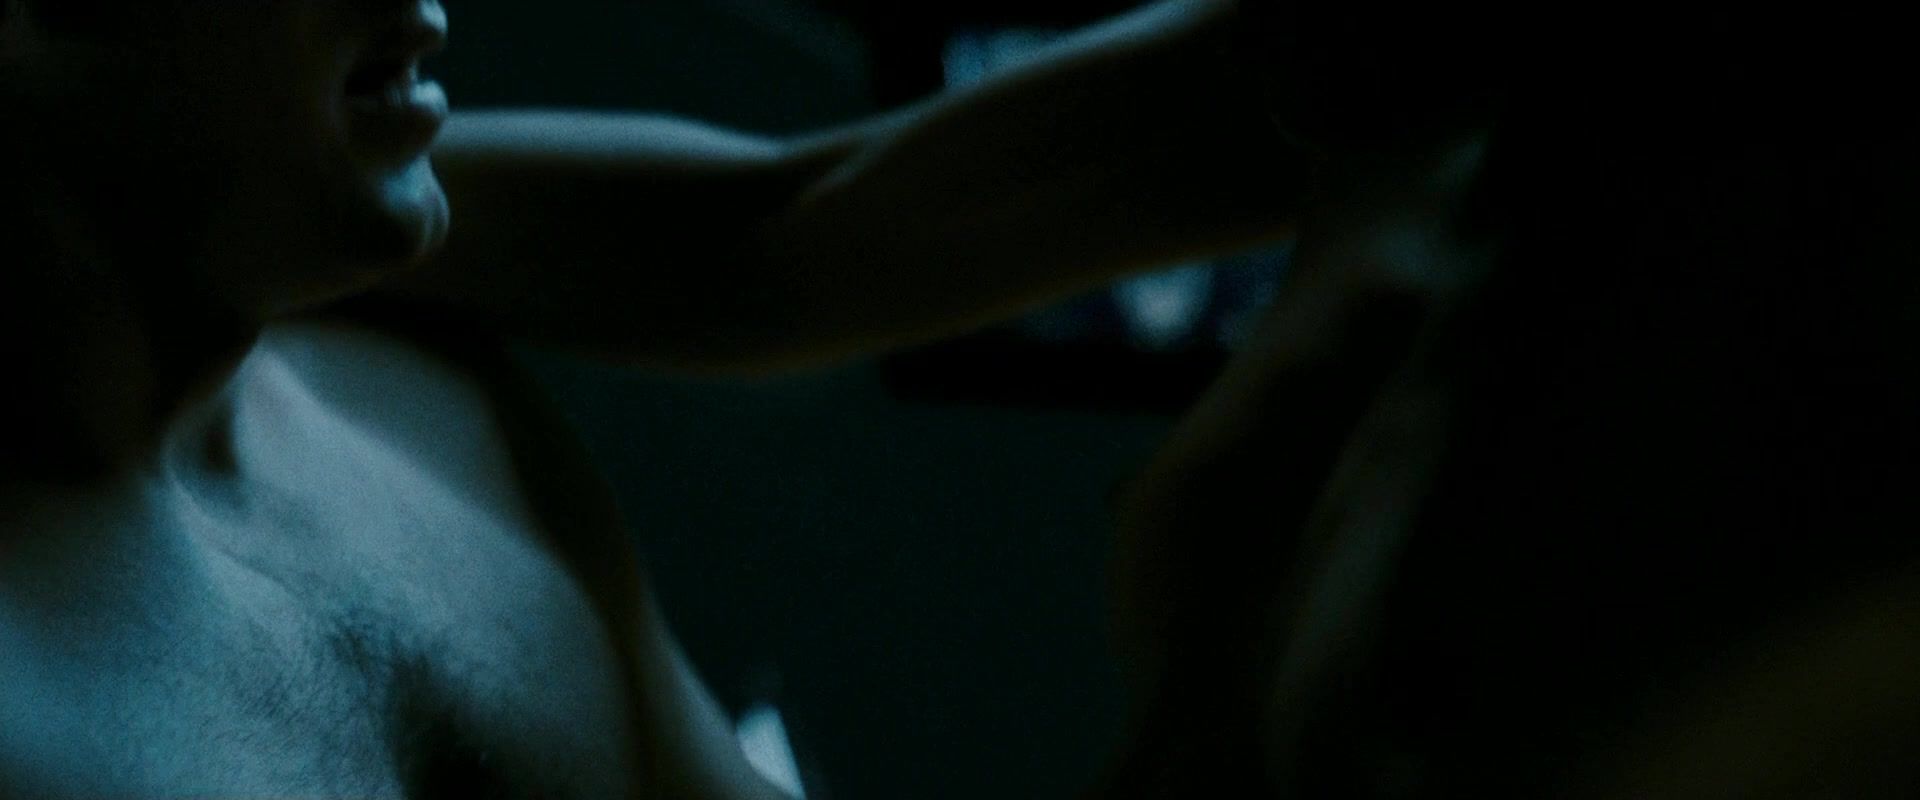 Tinder Malin Akerman, Carla Gugino naked - Watchmen (2009) Rimming